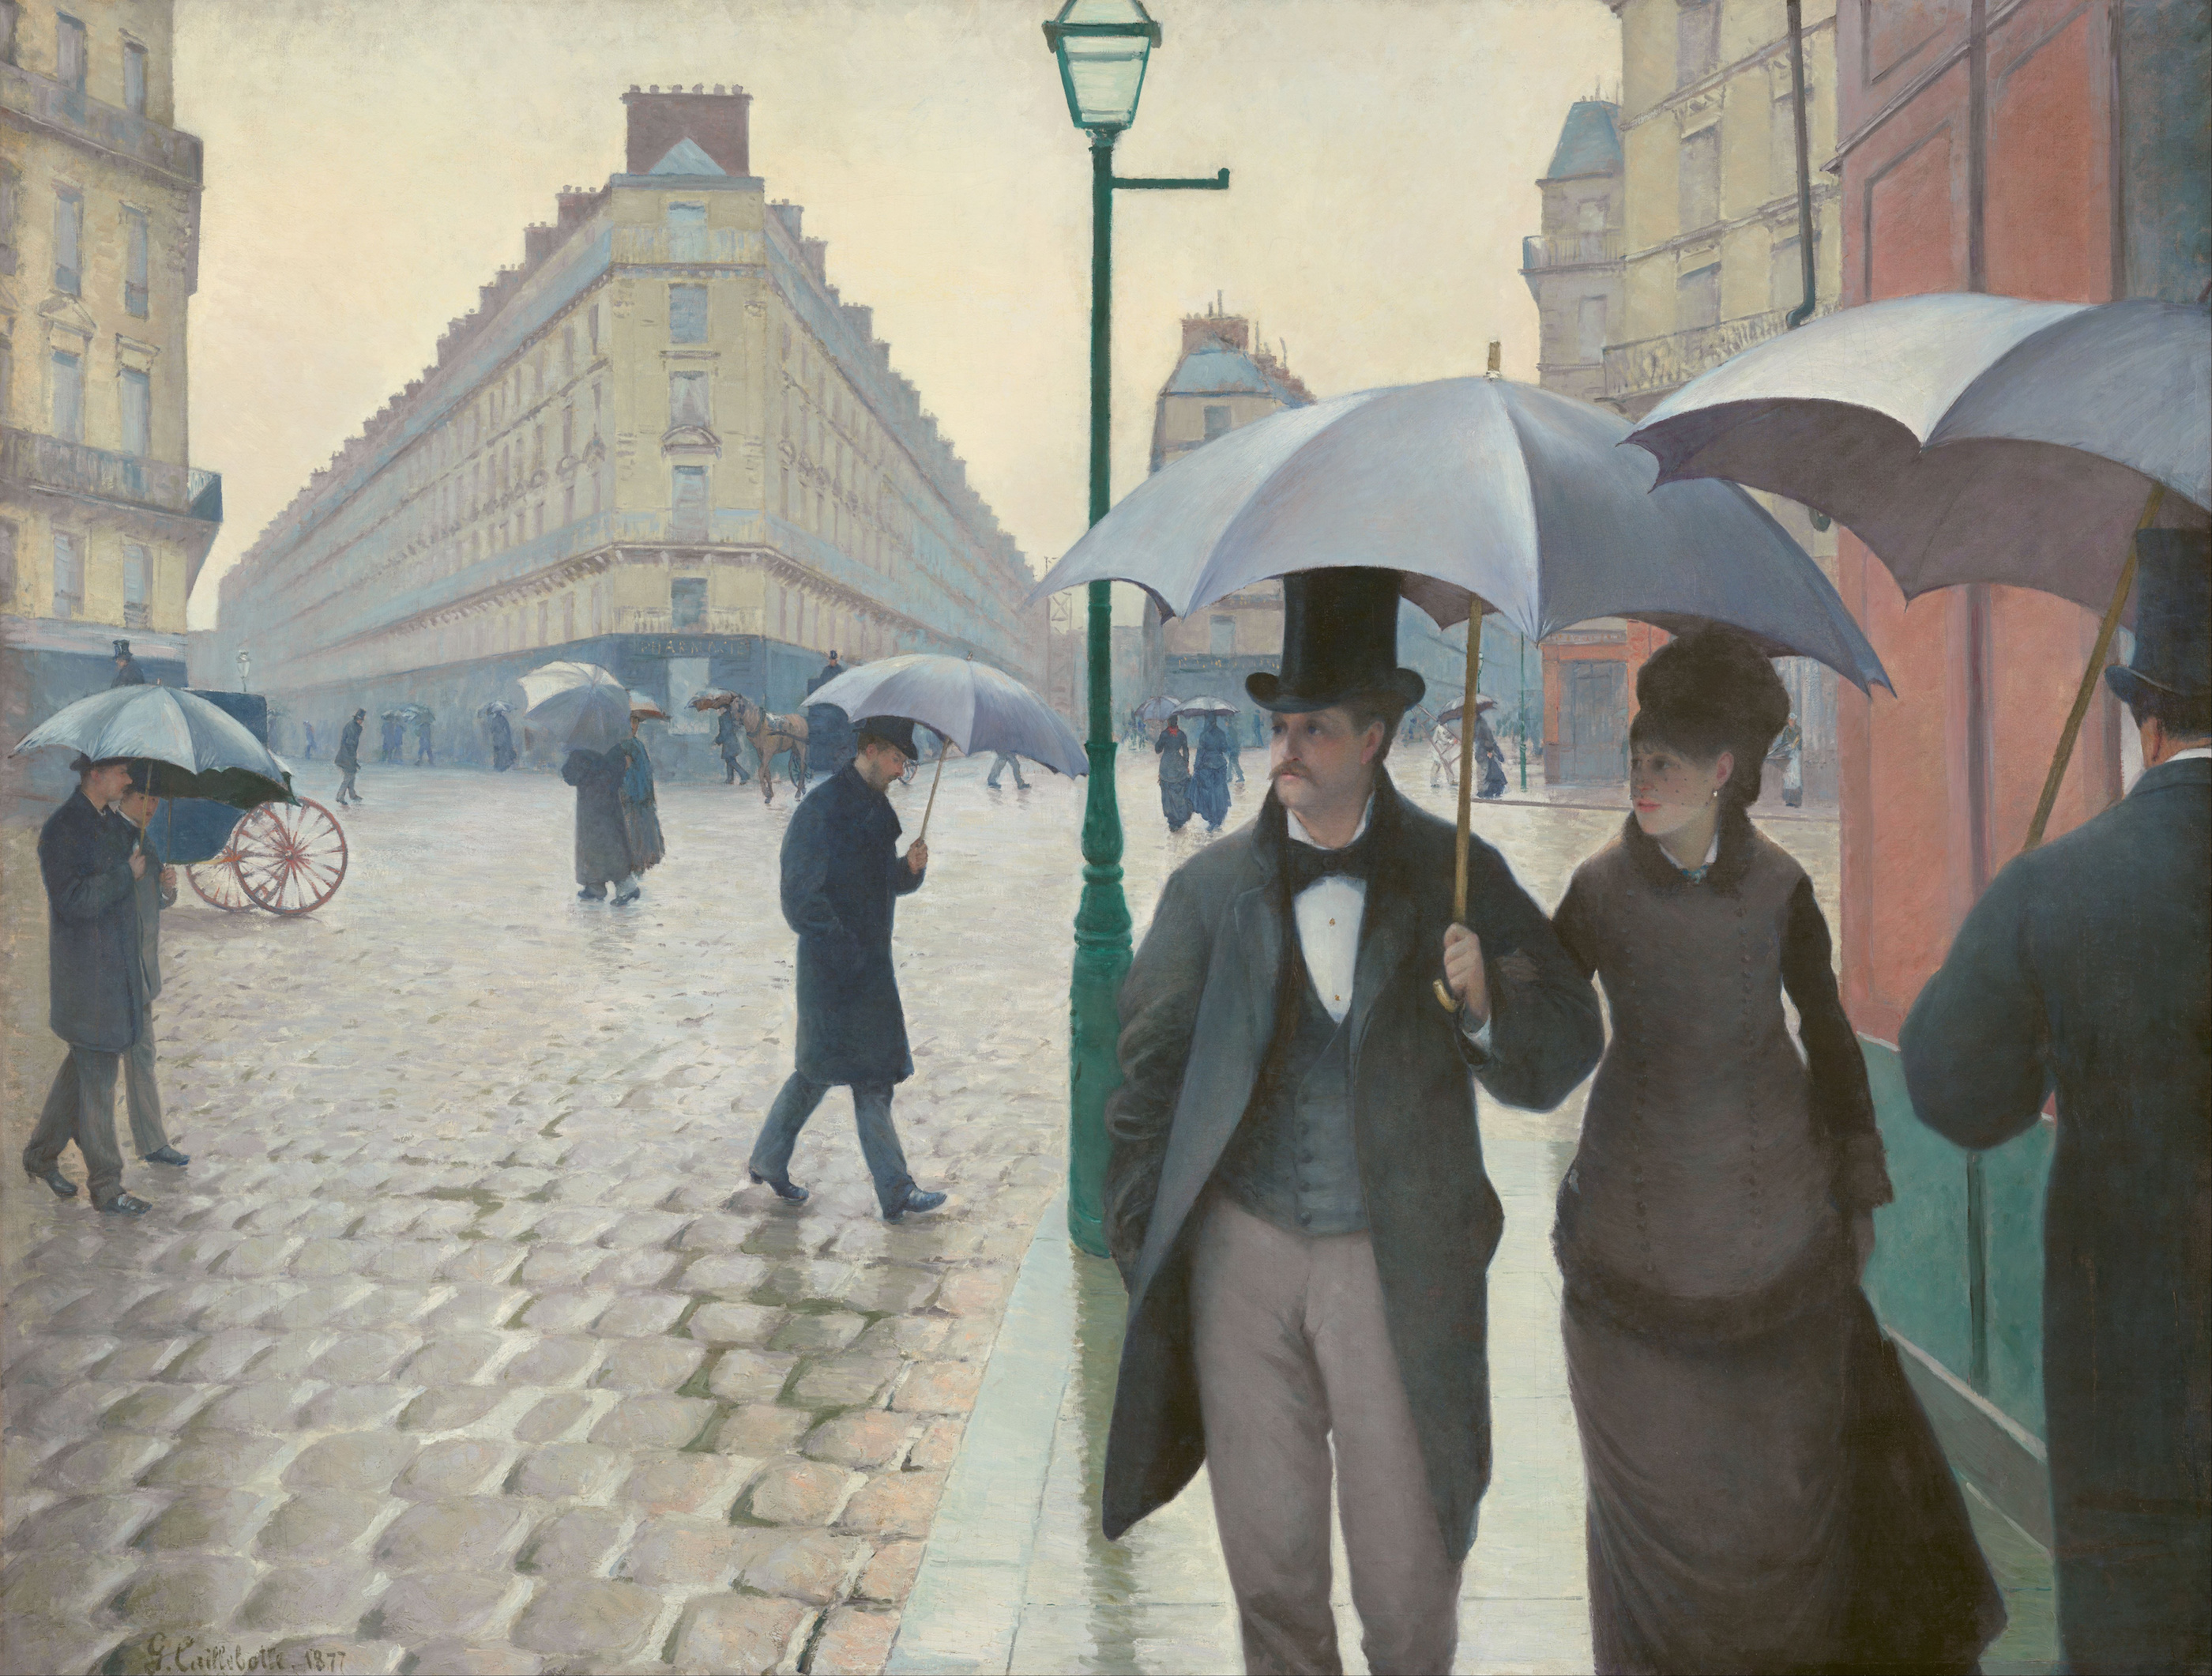 雨天的巴黎街道 by 古斯塔夫 卡勒波特 - 1877 - 212,2 x 276,2 cm 芝加哥藝術博物館